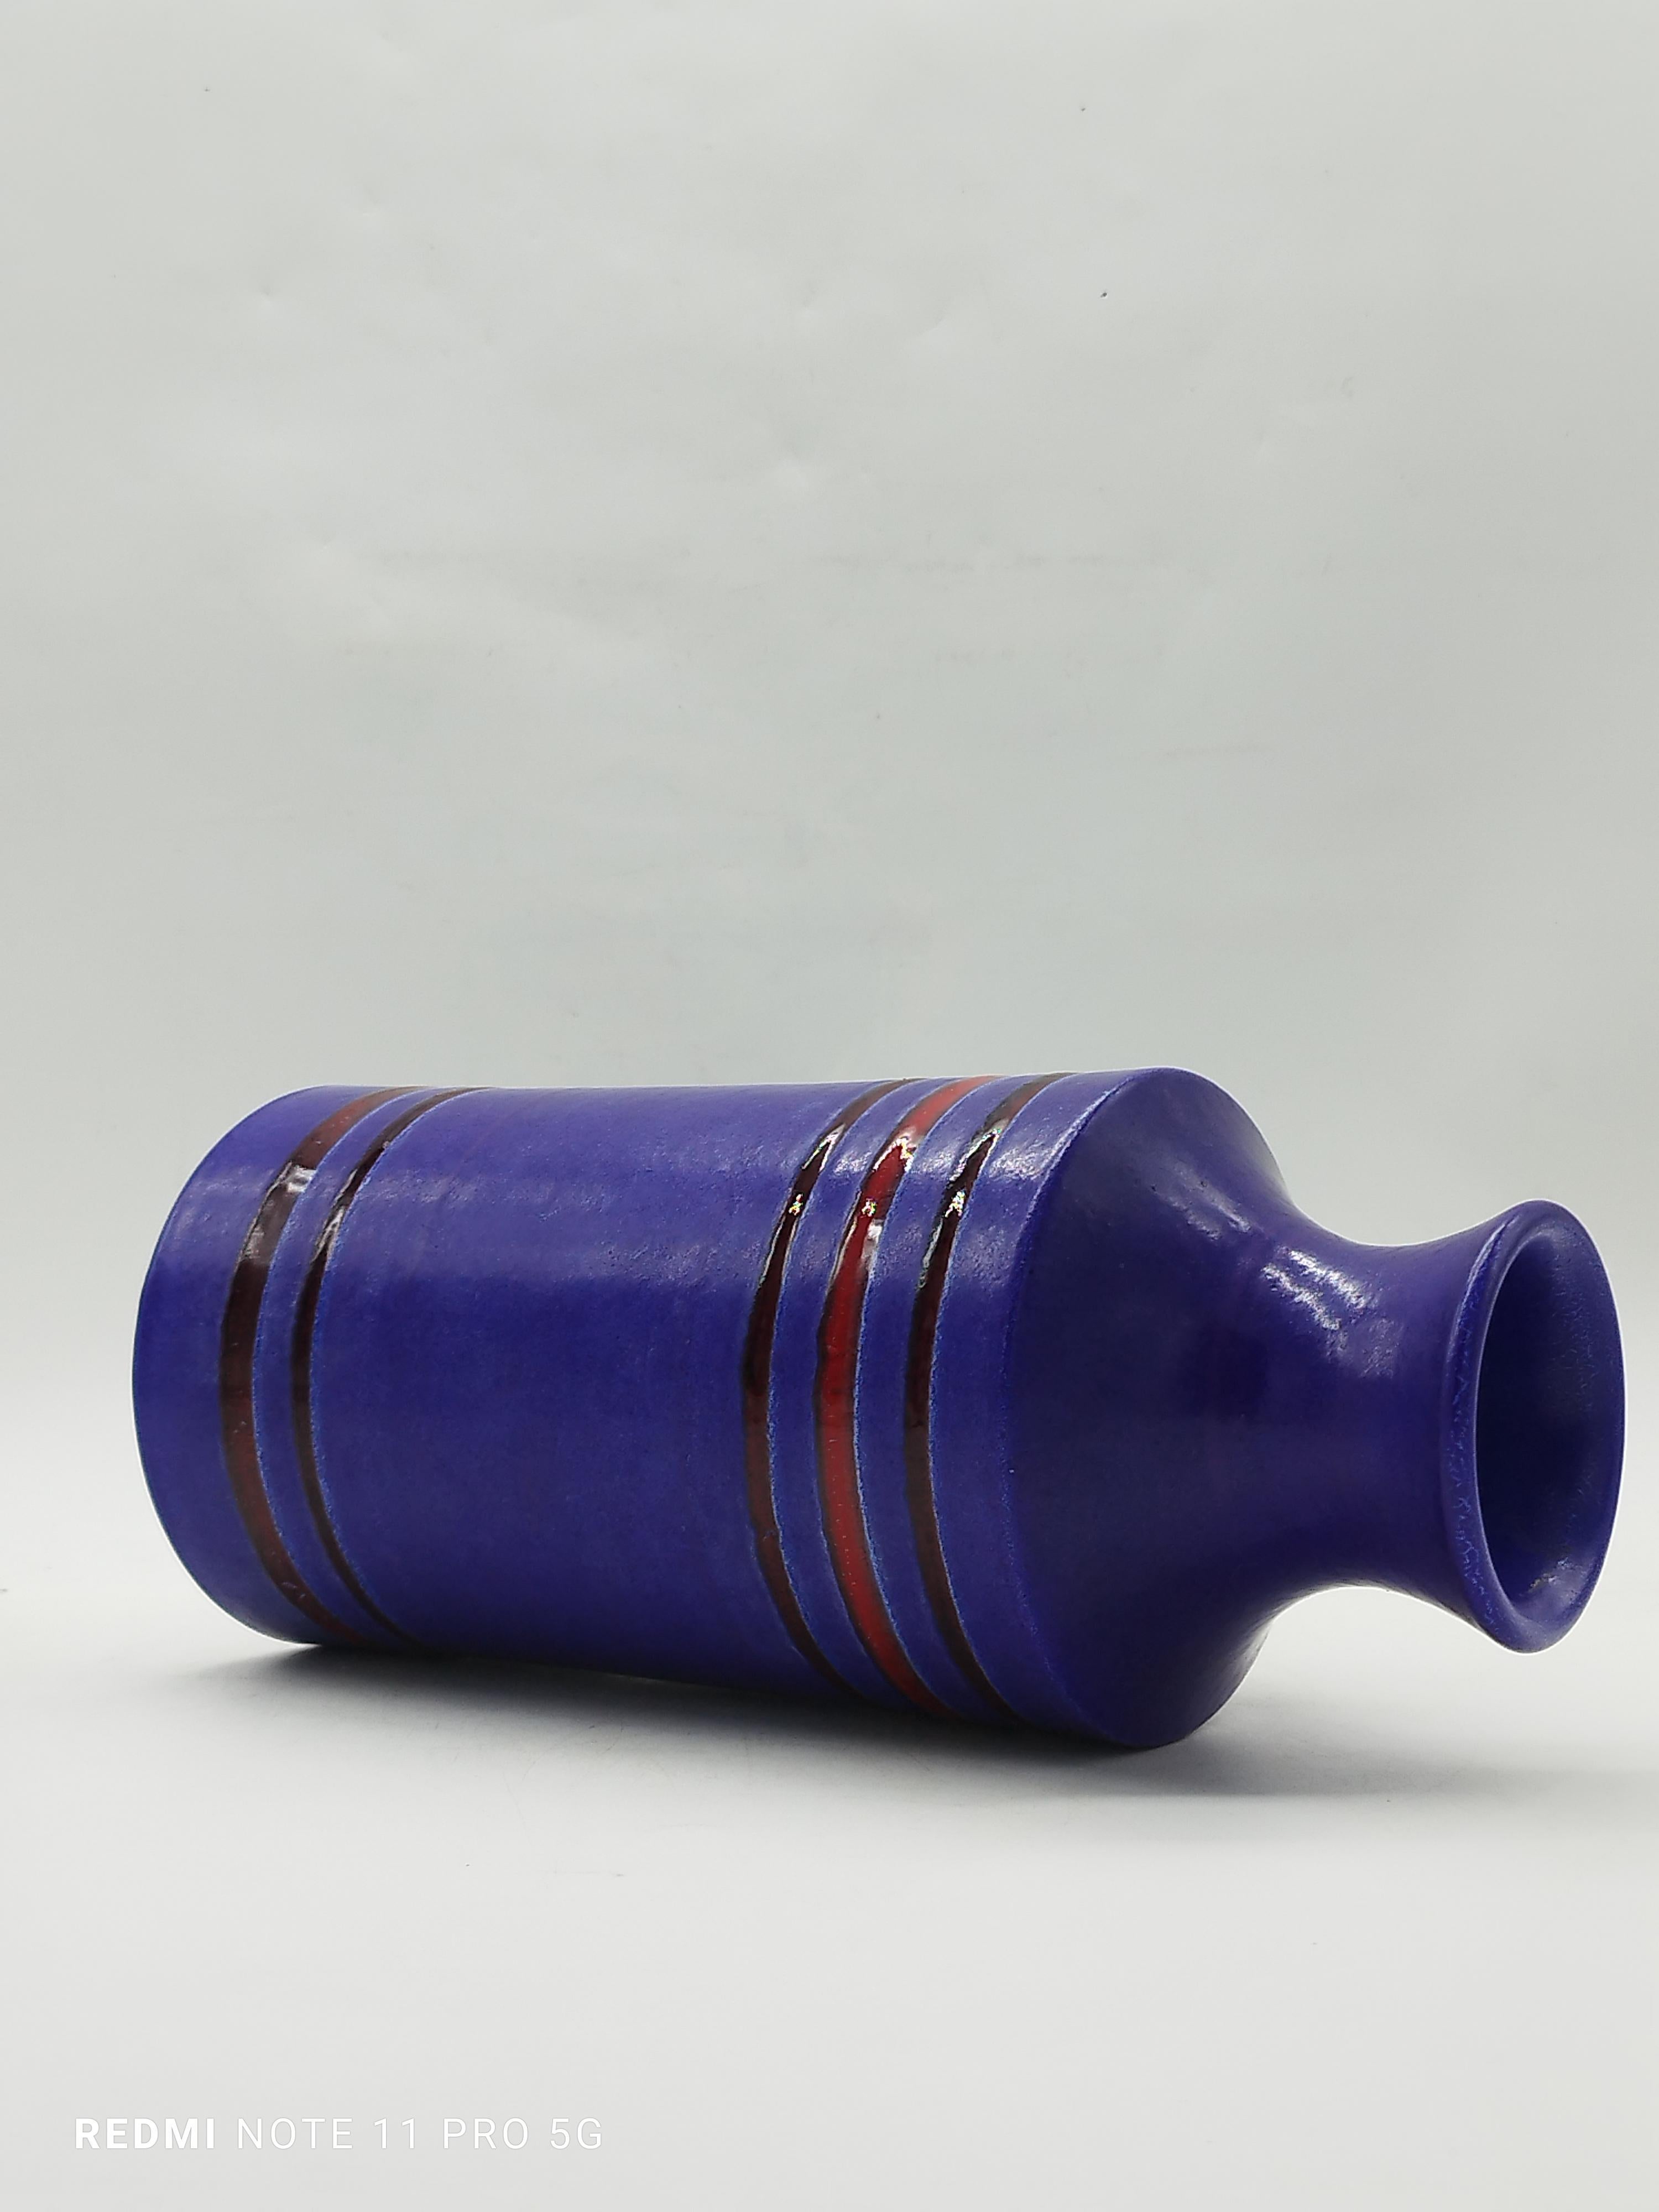 Italian Aldo Londi for Bitossi Glazed Purple Ceramic Vase, Italy 1960s For Sale